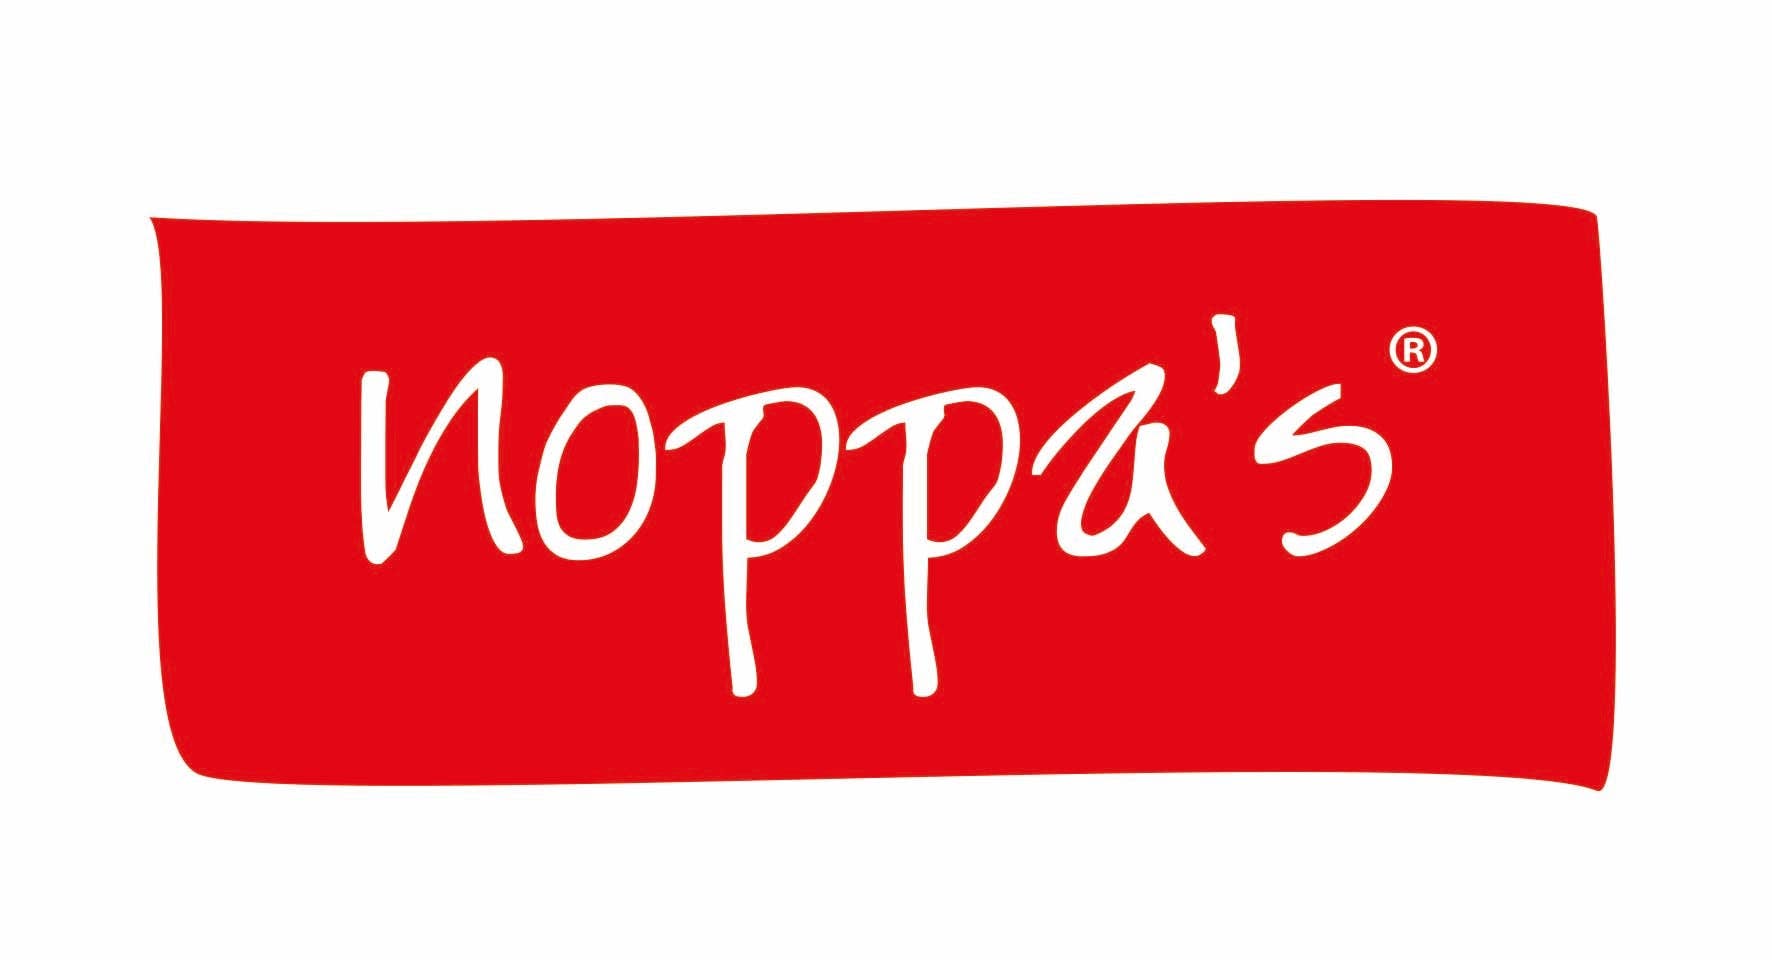 noppa's